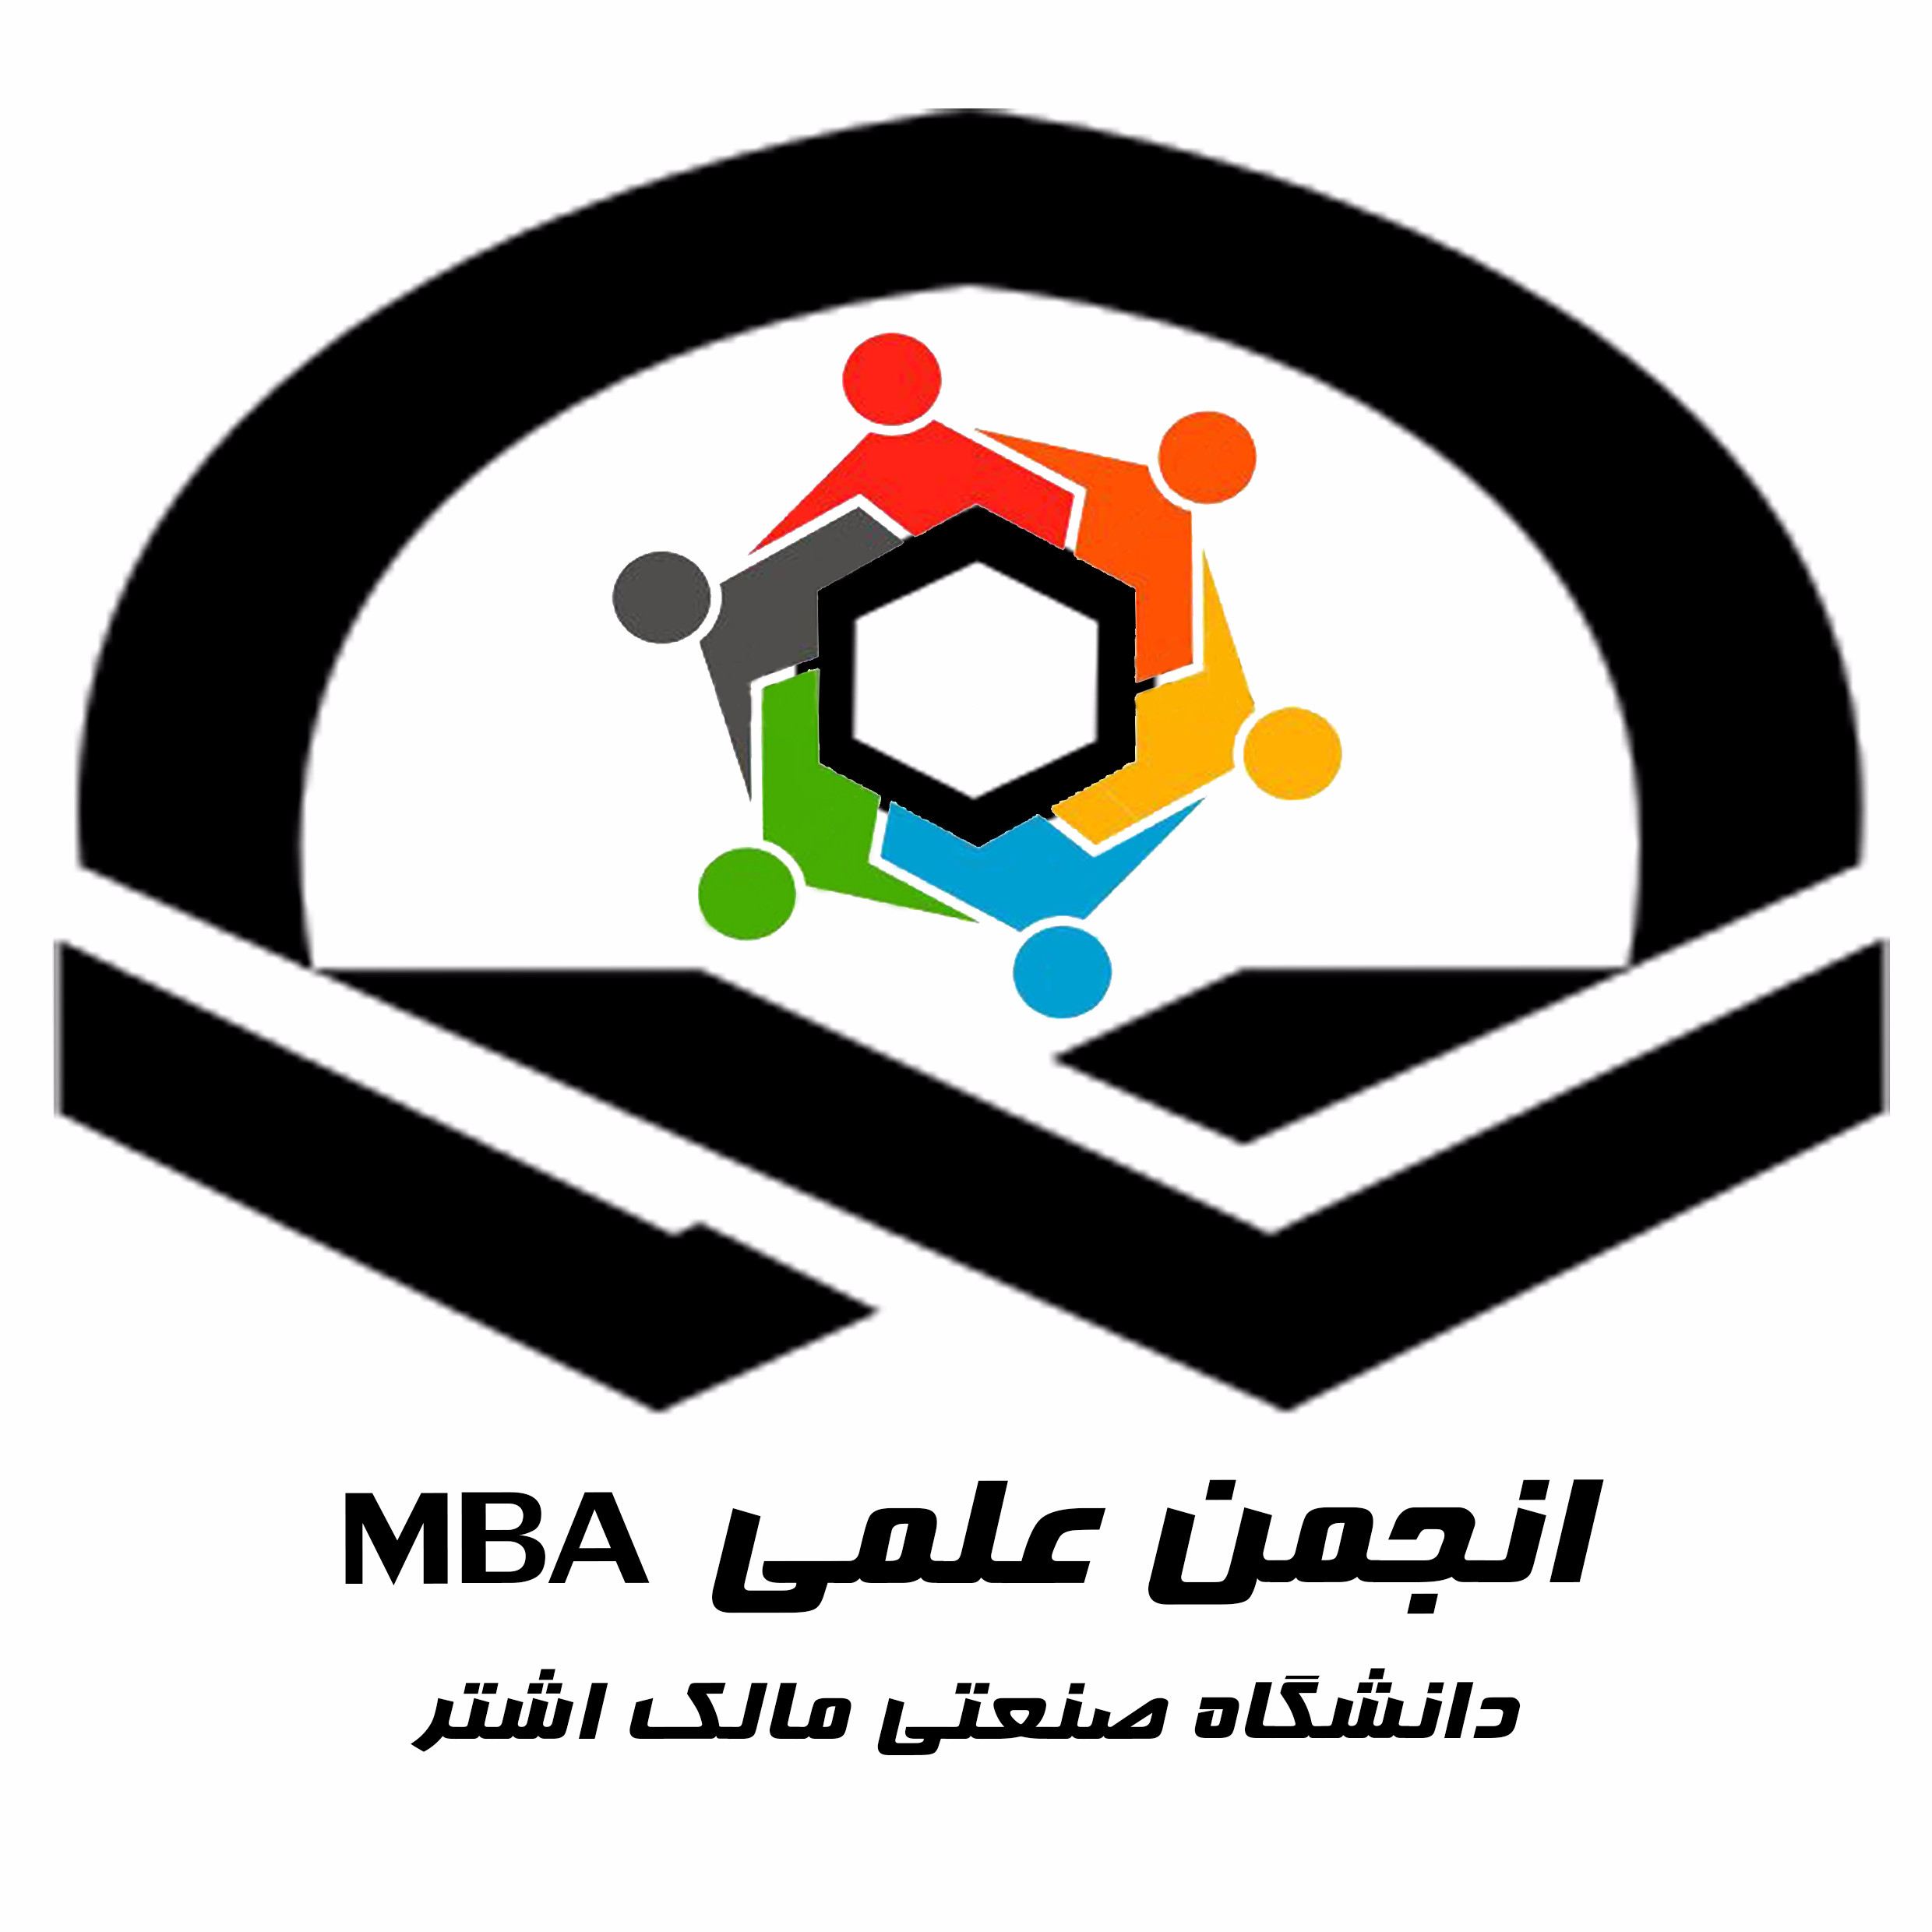 انجمن علمی MBA